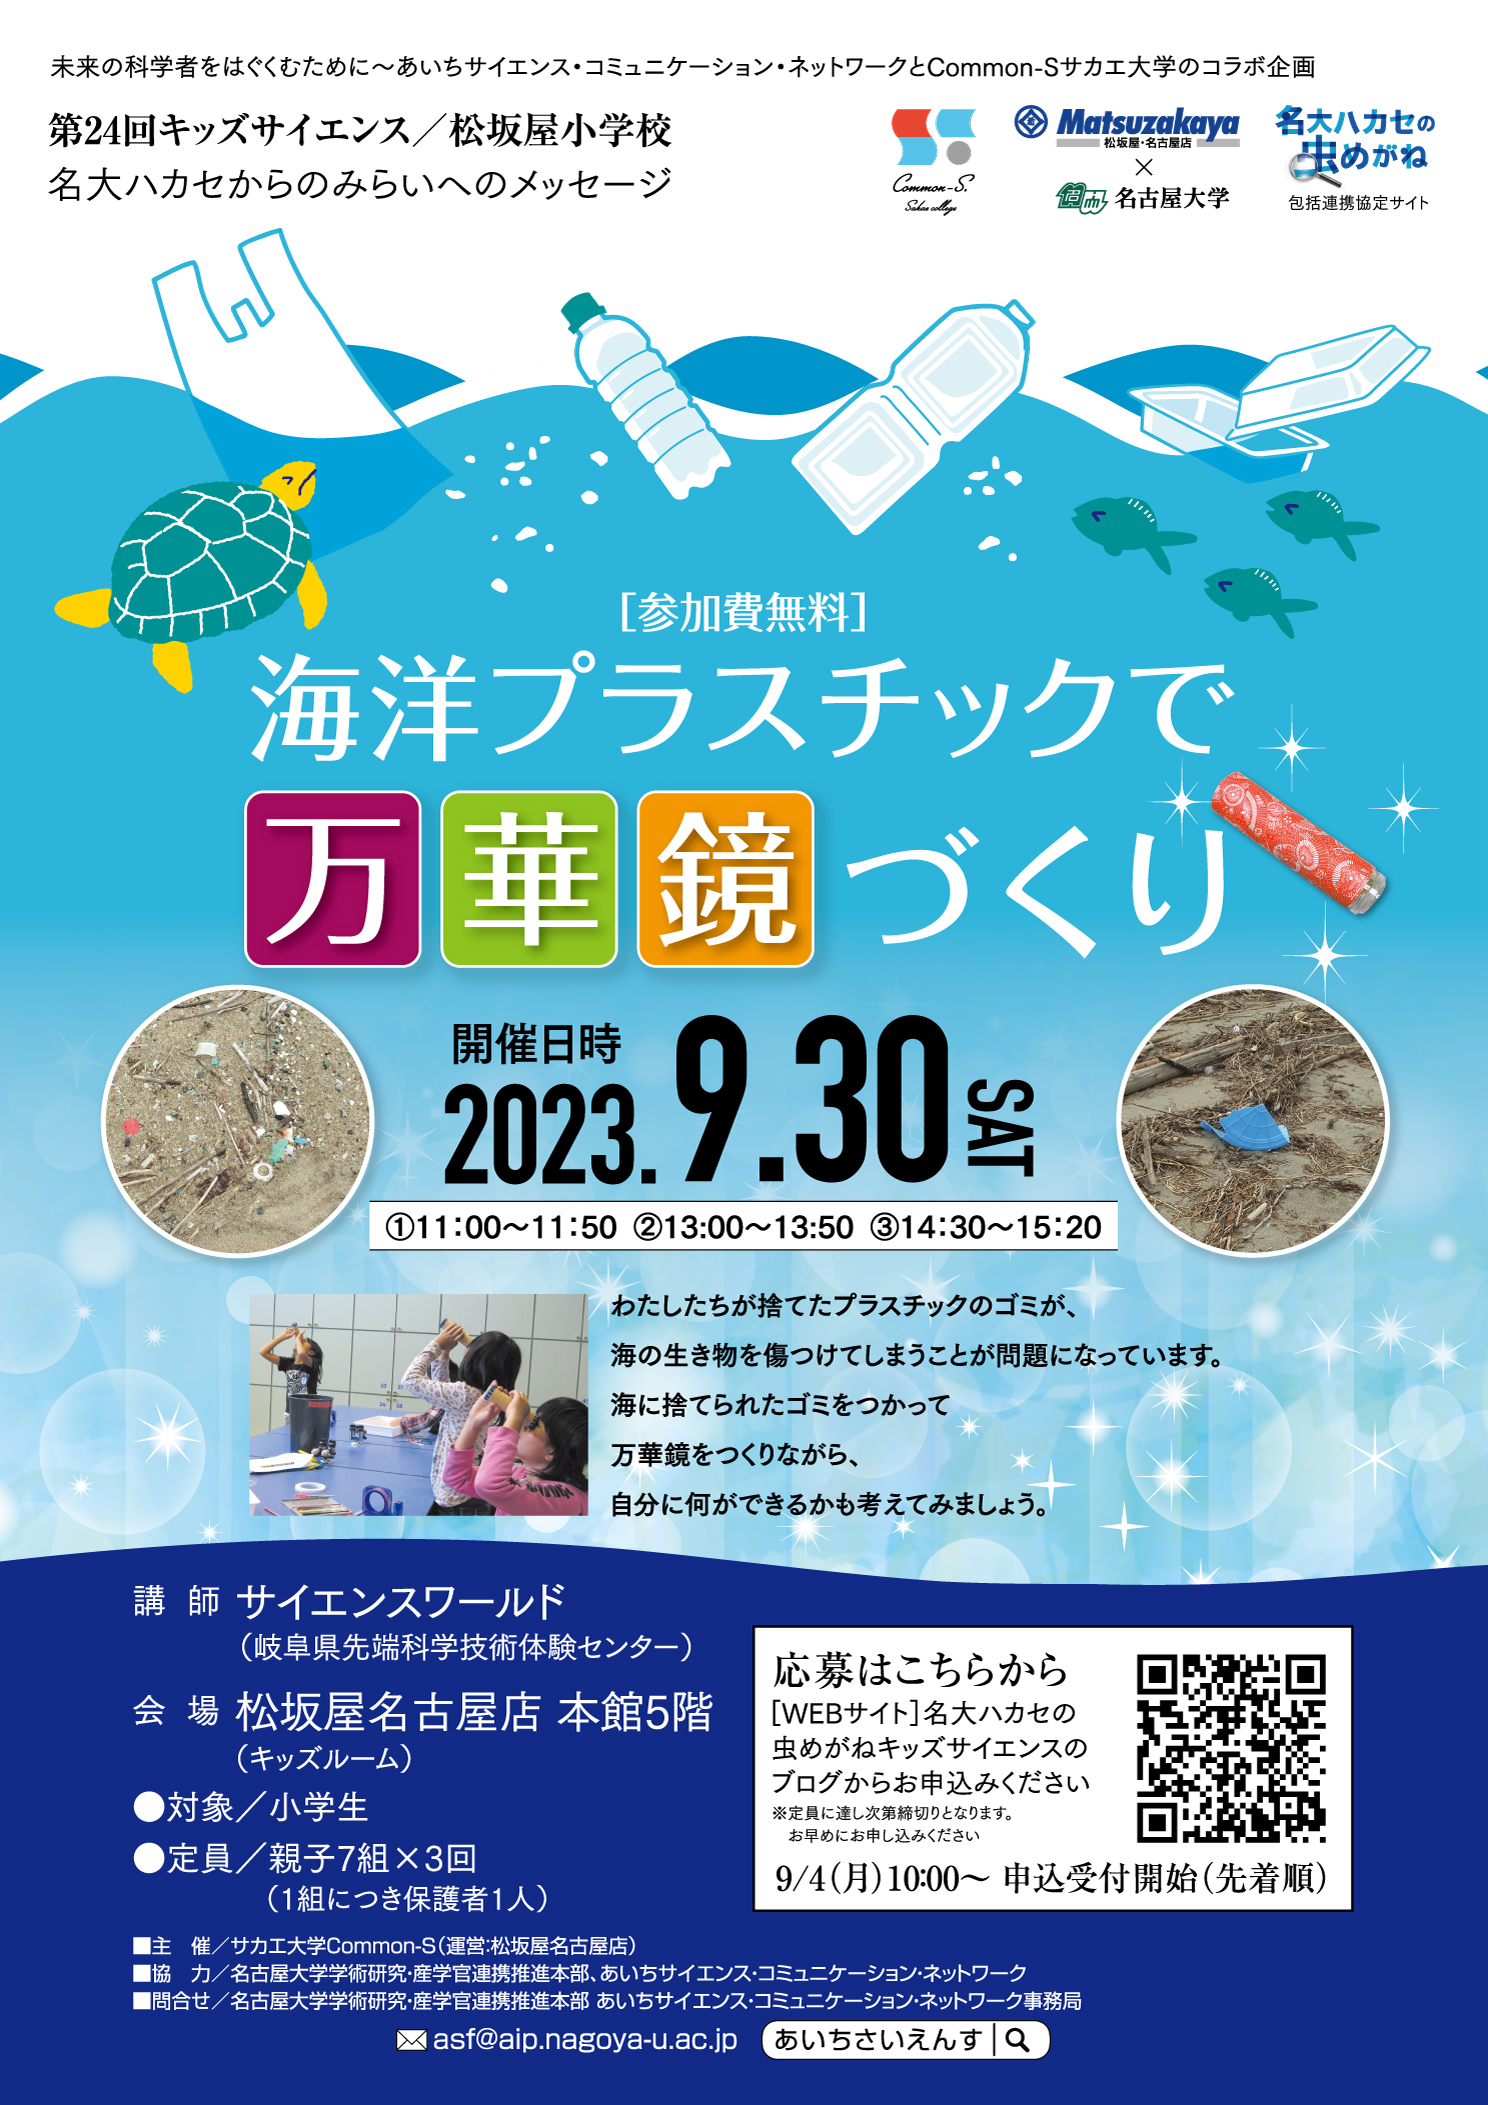 【満席御礼】松坂屋小学校キッズサイエンス「海洋プラスチックで万華鏡づくり」